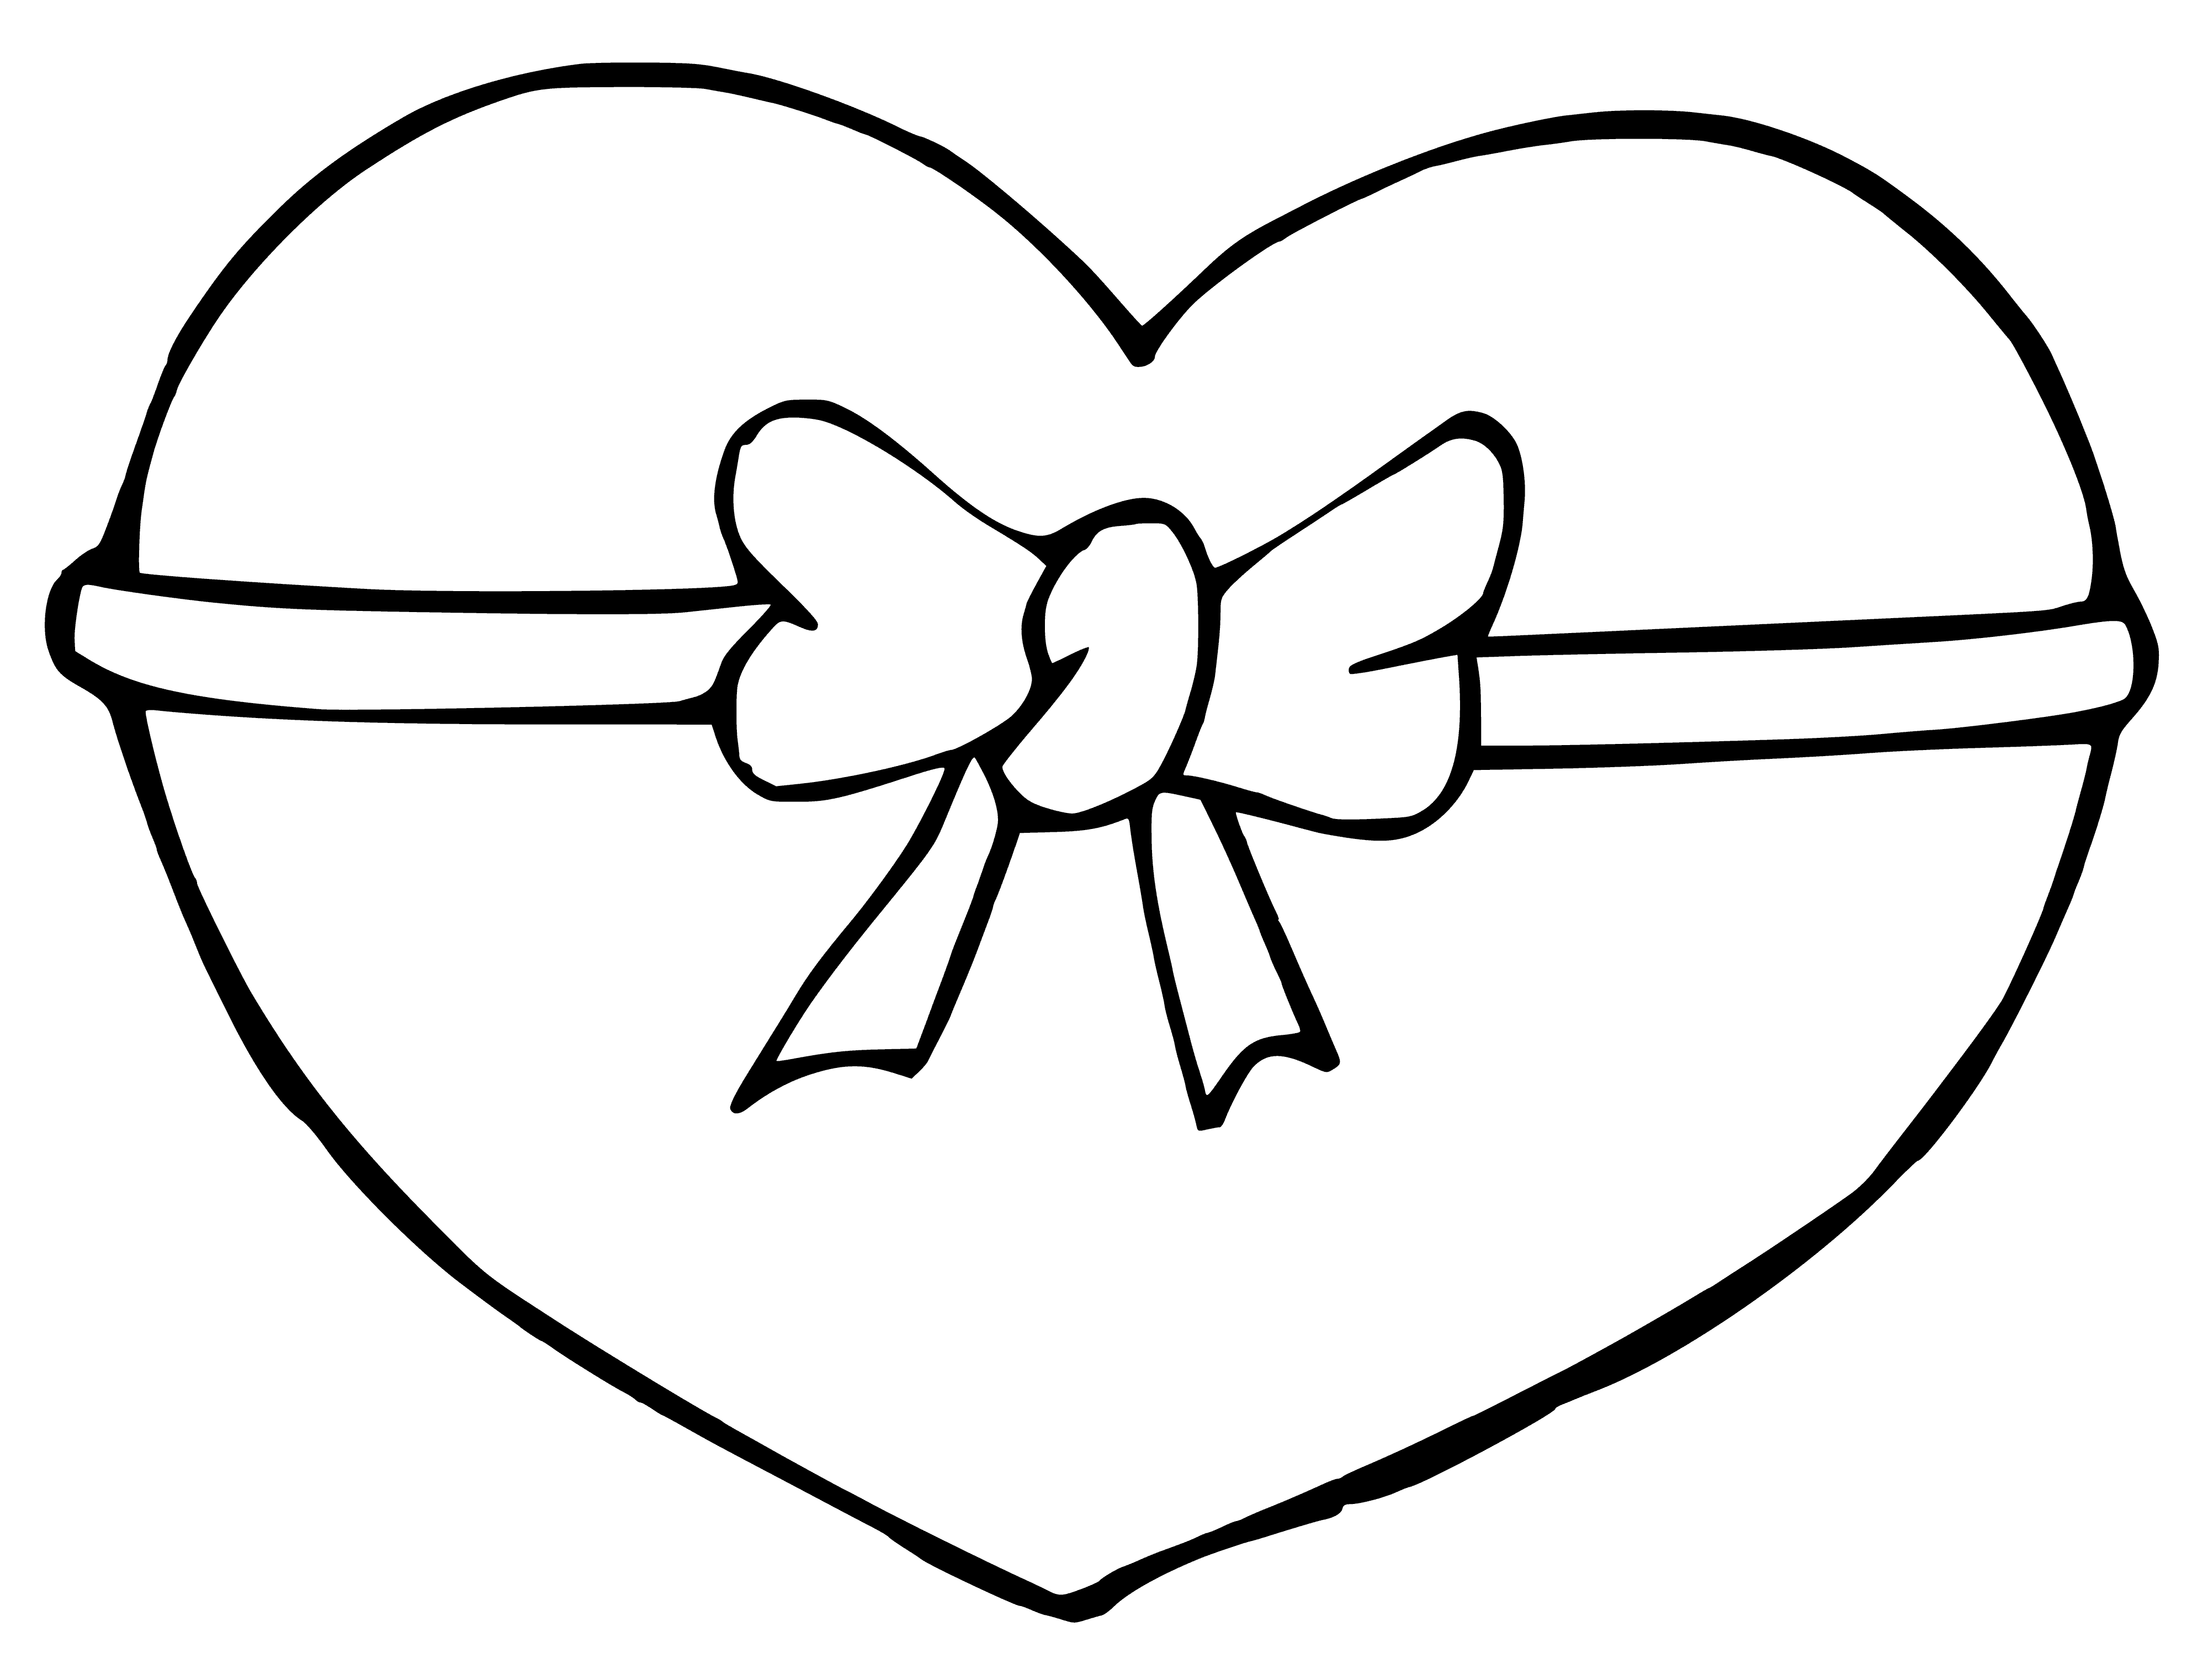 yay ile kalp boyama sayfası